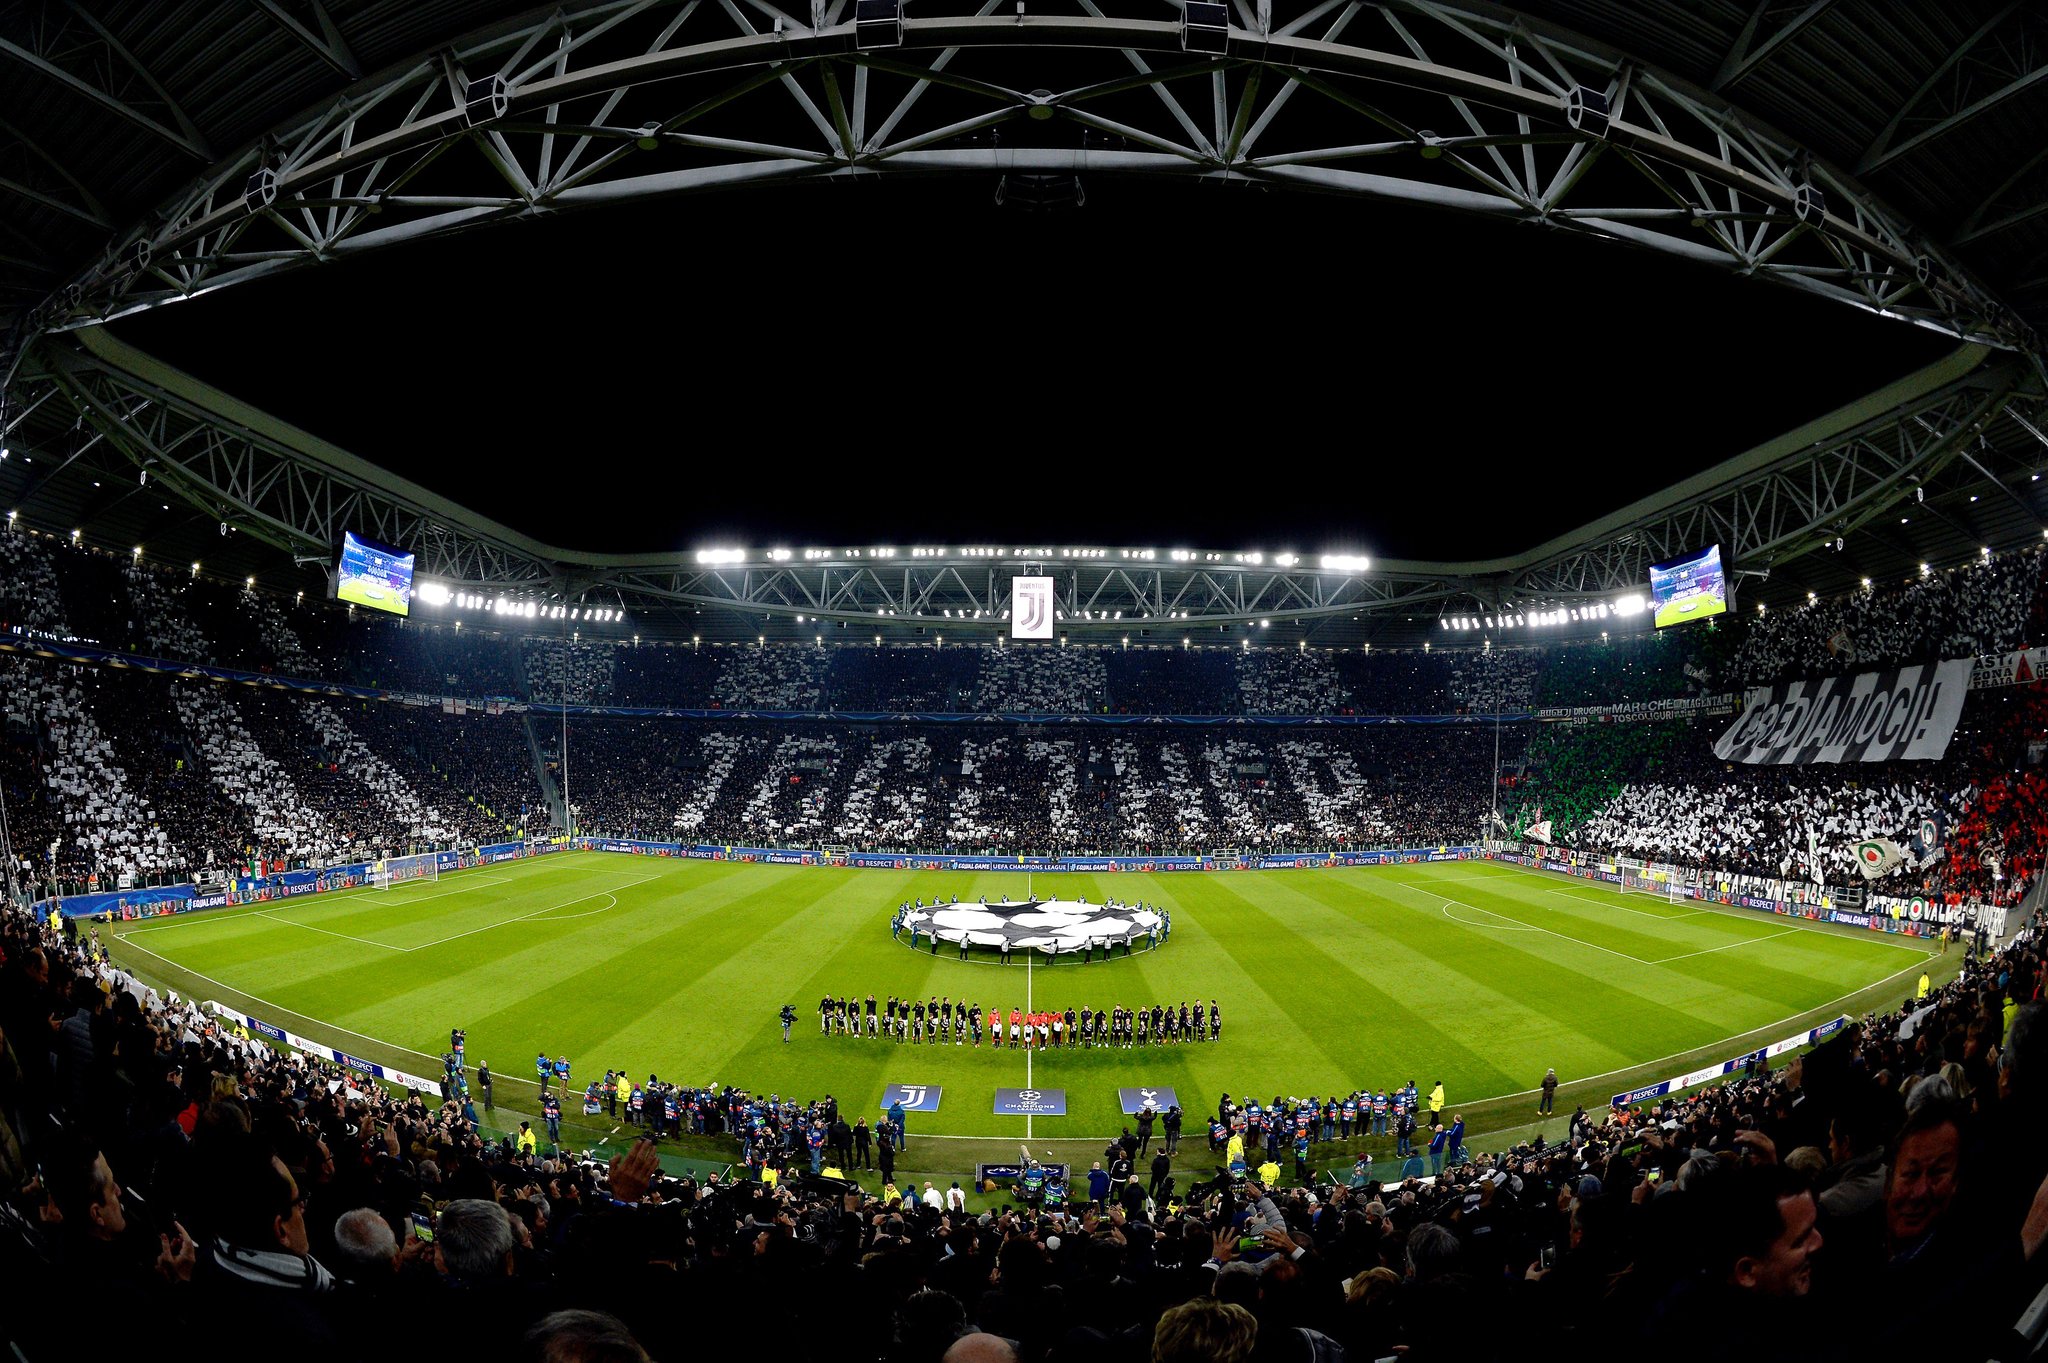 Ribuan penggemar Juventus membatalkan langganan SKY & DAZN setelah pengurangan poin Juventus- Check Out